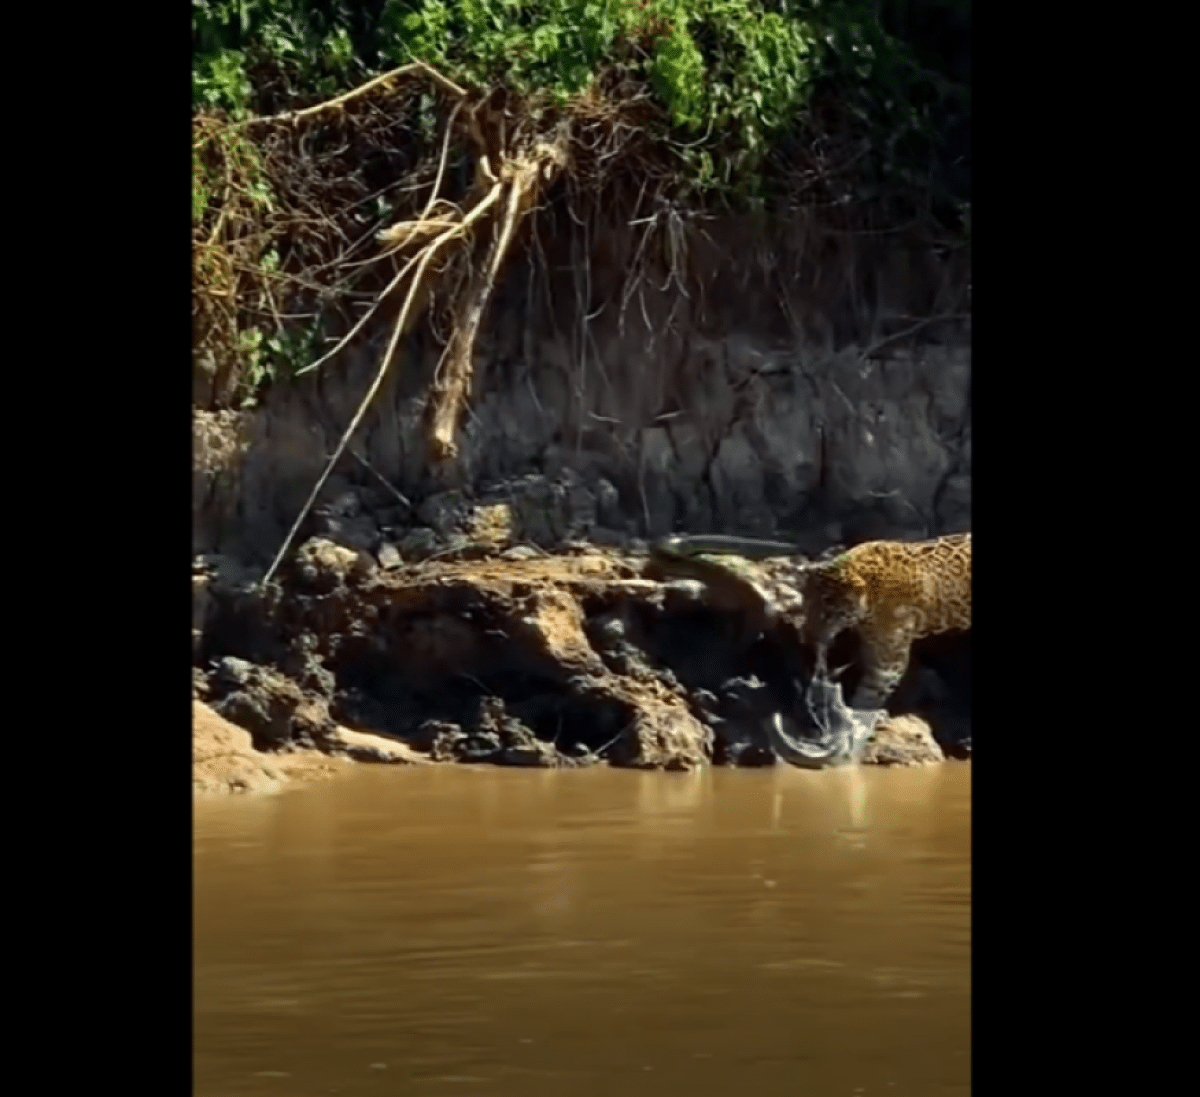 Mais uma incrível batalha de tirar o fôlego dos turistas e pescadores que circulam pelos rios do Pantanal